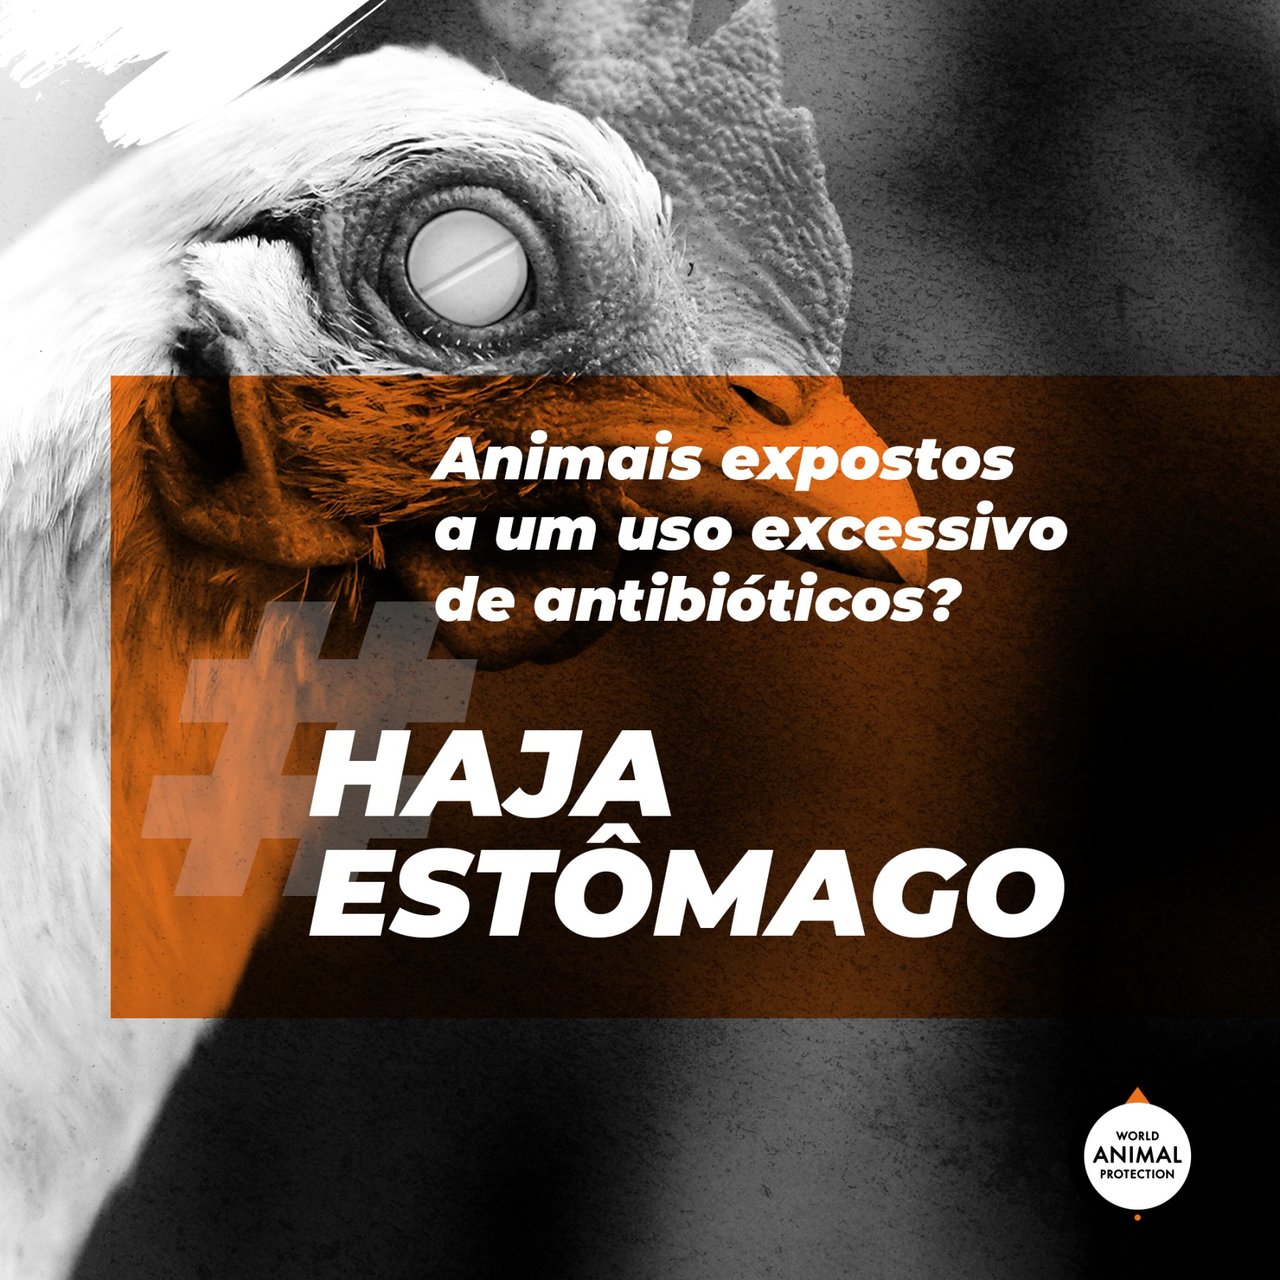 Imagem em preto e branco, ao fundo, de um frango. Texto sobre a imagem: animais expostos a um uso excessivo de antibióticos? Haja estômago!